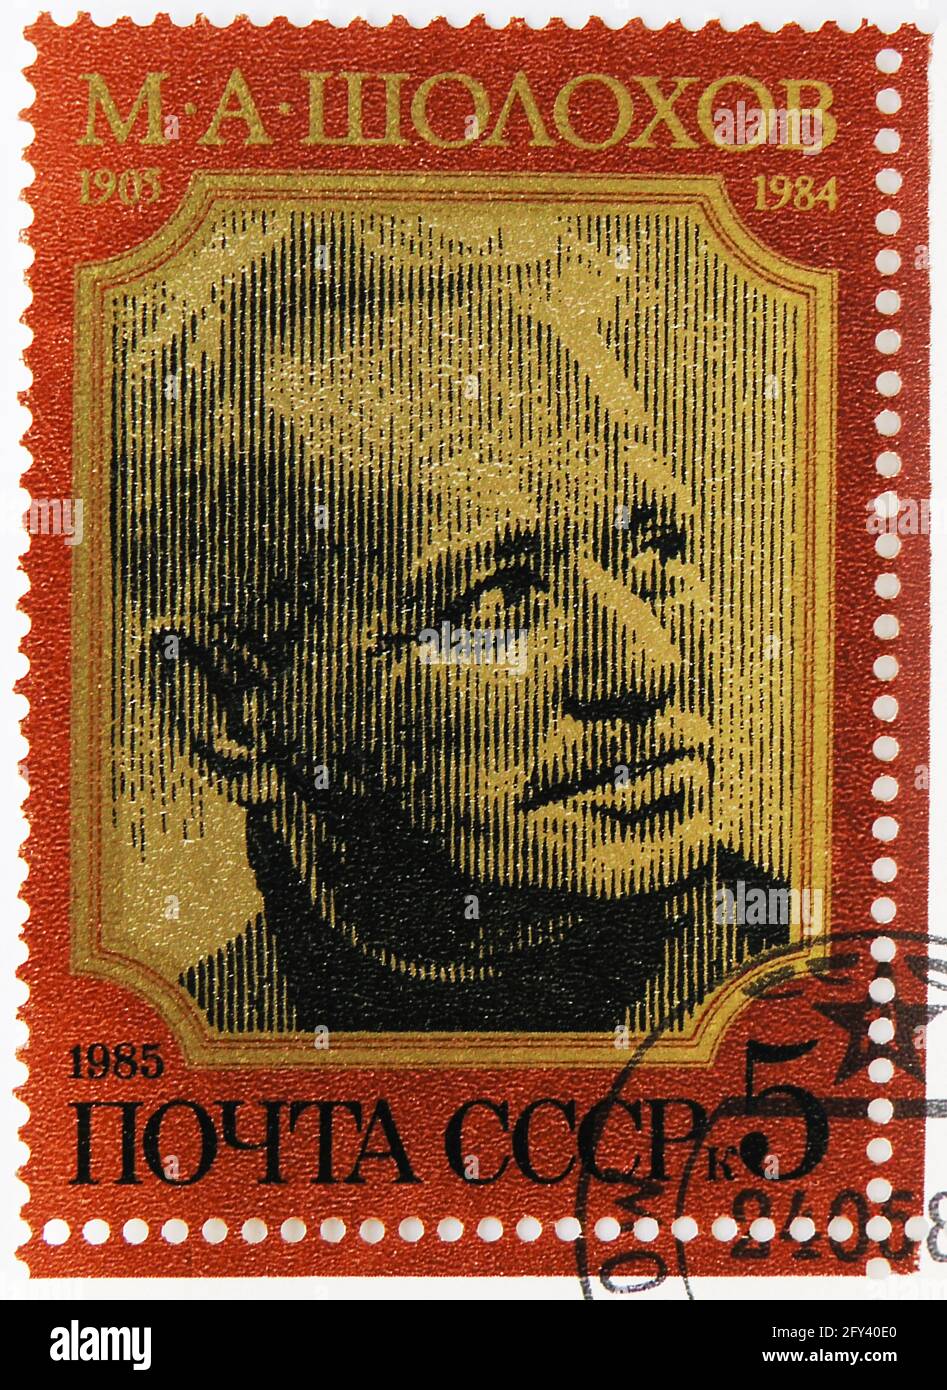 MOSKAU, RUSSLAND - 31. AUGUST 2019: Die in der Sowjetunion (Russland) gedruckte Briefmarke zeigt Michail Alexandrowitsch Sholokhov, 80. Geburtstag von M.A. Stockfoto